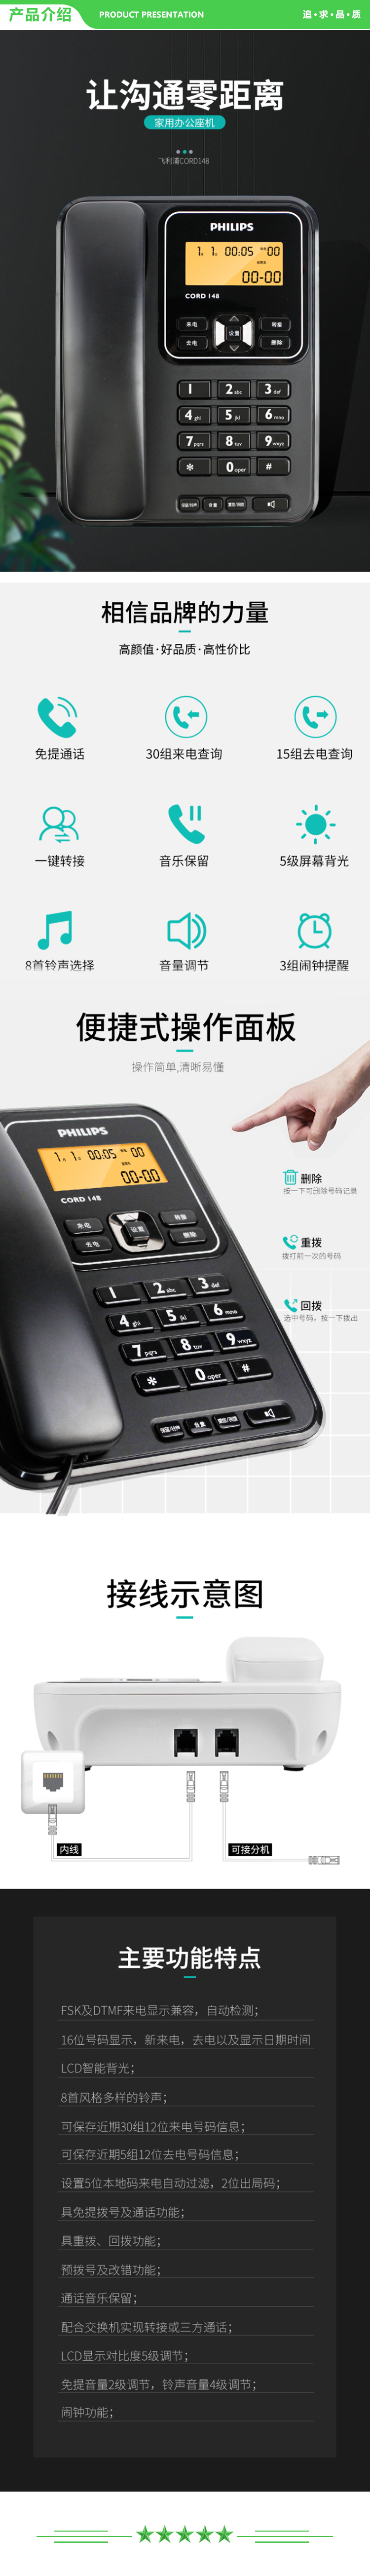 飞利浦 PHILIPS CORD148 电话机座机 固定电话 办公家用 屏幕橙色背光 一键转接 白色 .jpg